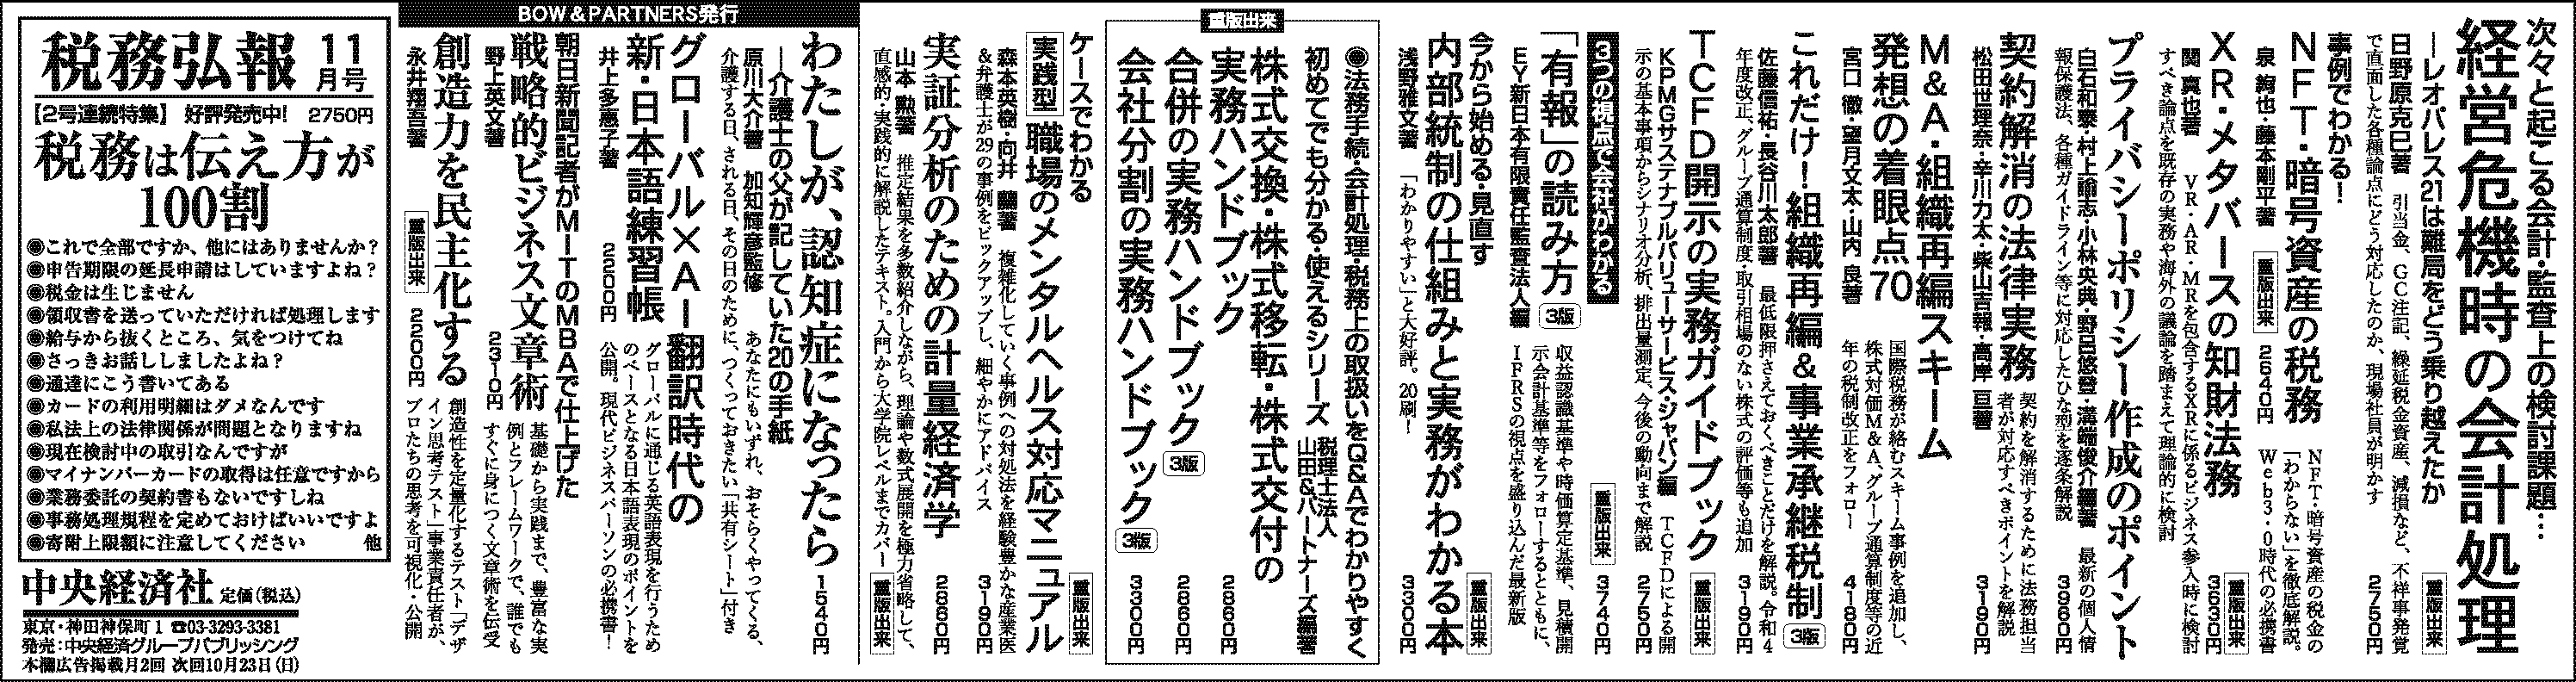 『日本経済新聞』広告